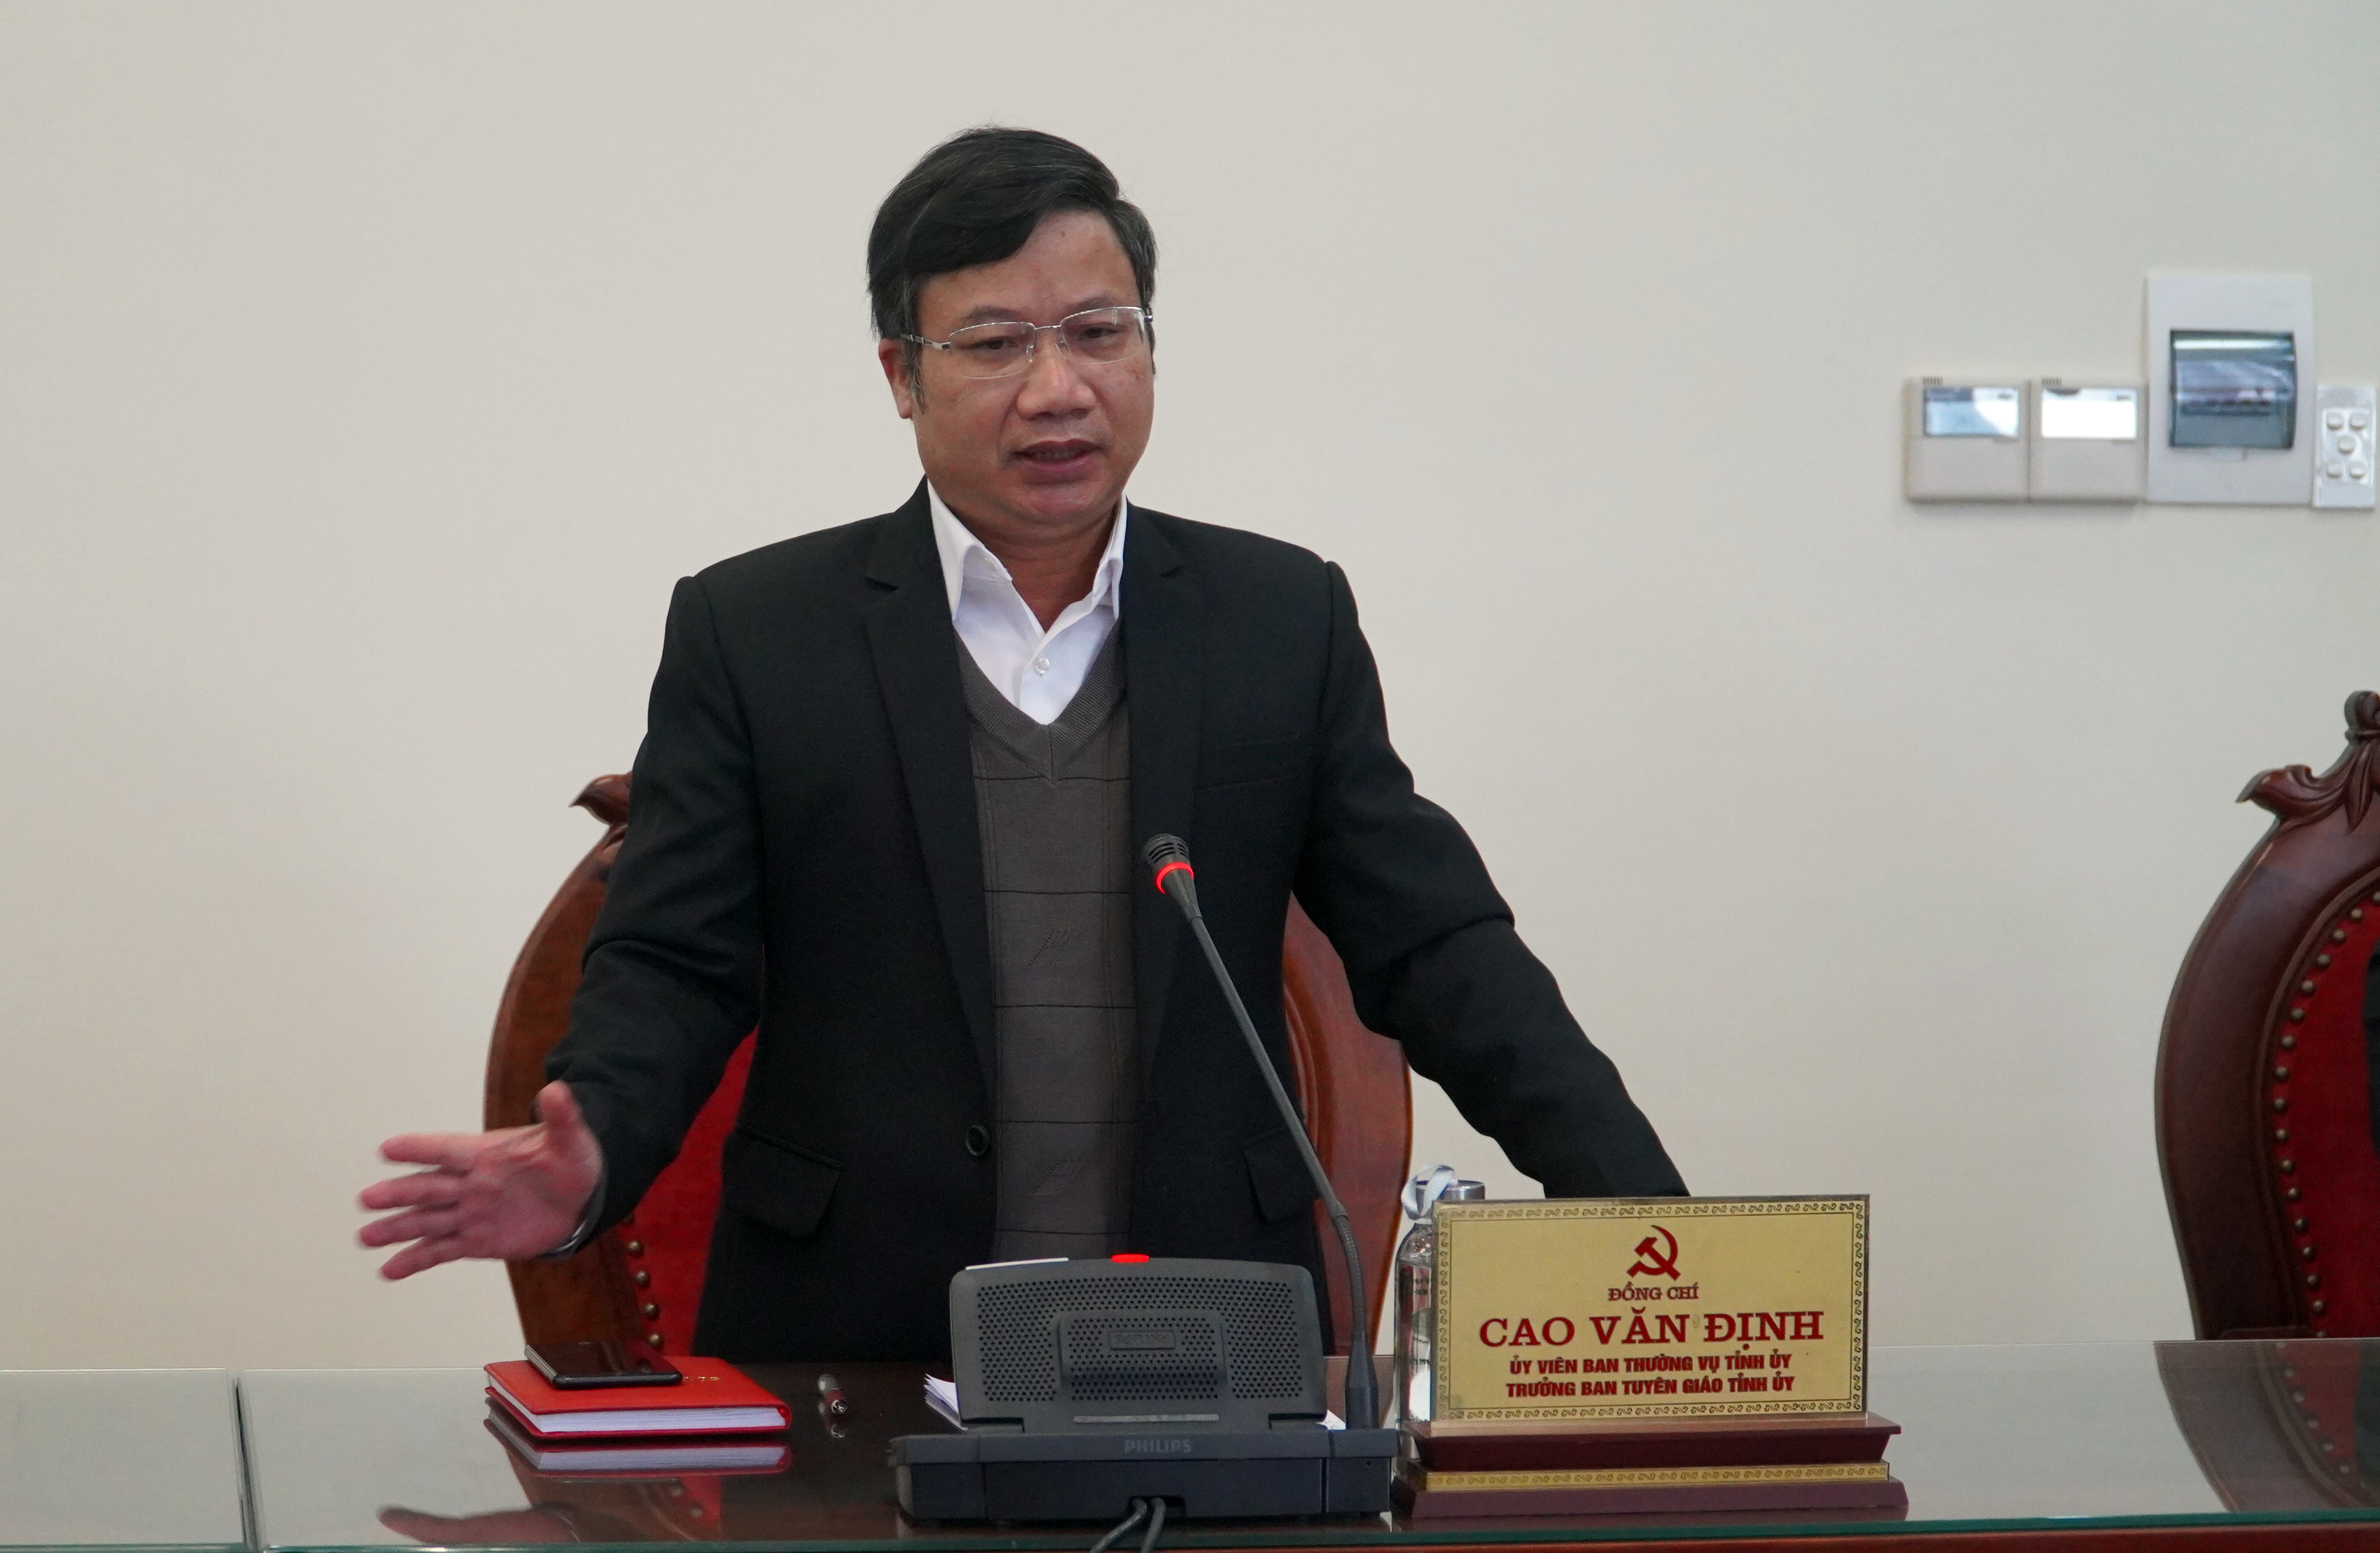 Đồng chí Trưởng ban Tuyên giáo Tỉnh ủy Cao Văn Định: Tiếp tục đẩy mạnh tuyên truyền, nâng cao ý thức phòng, chống dịch cho Nhân dân